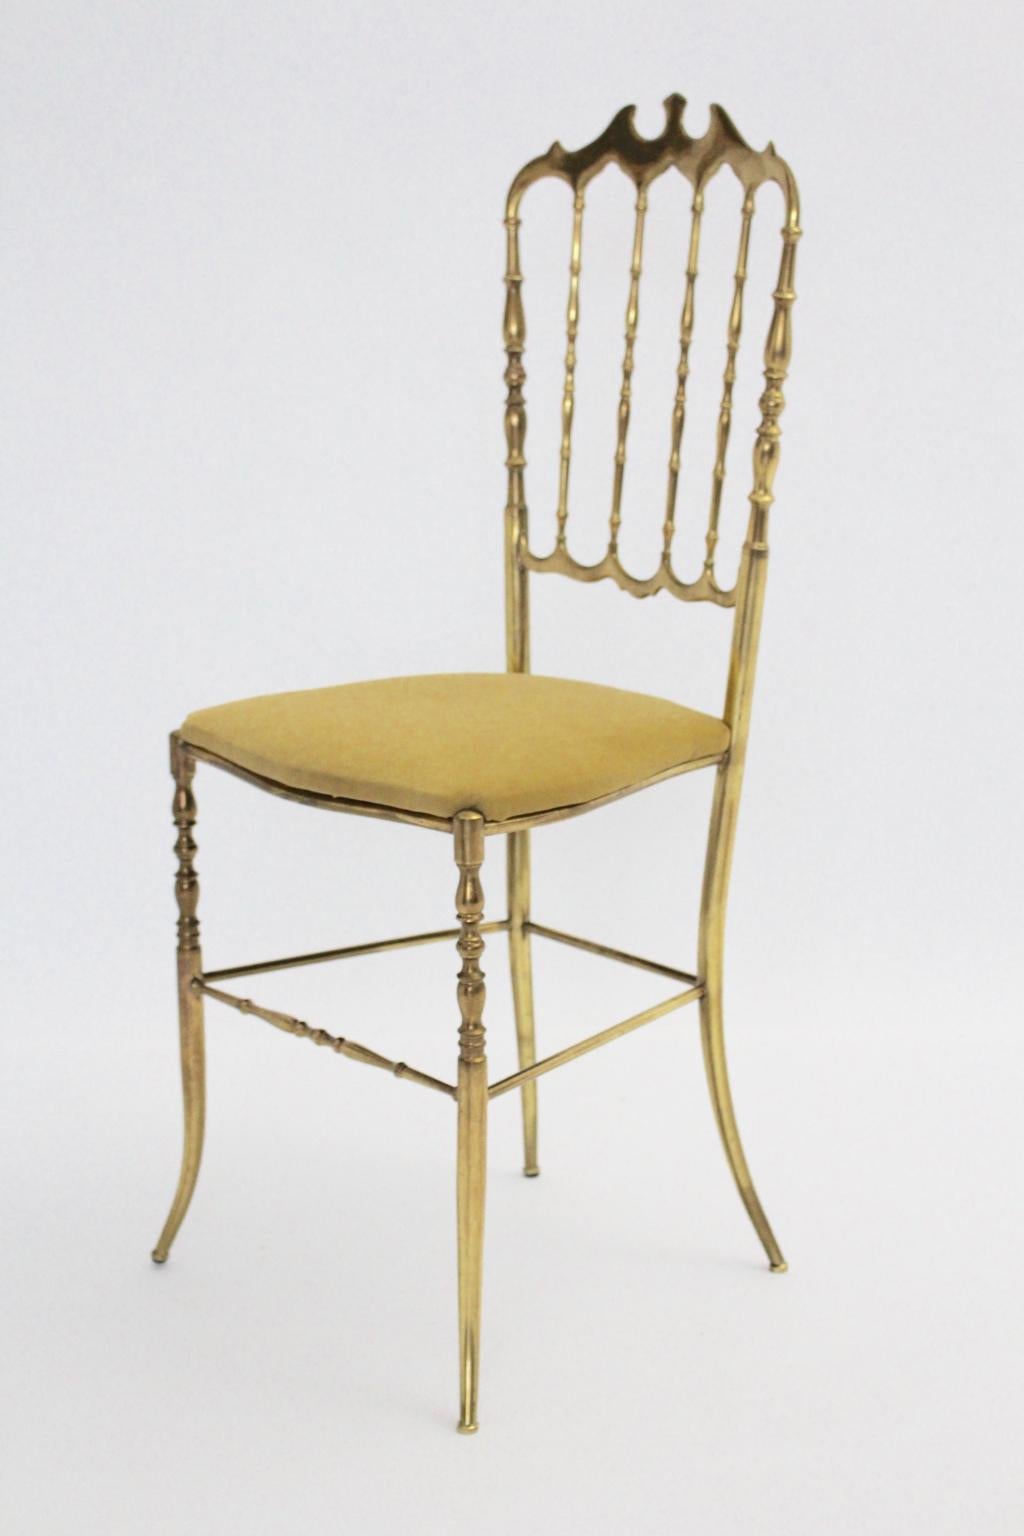 Mid Century Modern Vintage Chiavari Beistellstuhl aus Messing mit erneuertem gelben Samtstoffsitz.
Diese wunderbare Beistelltisch oder Stuhl Chiavari zeigt eine schöne Messing-Patina als wünschenswert Zeichen des Alters, während die gepolsterte